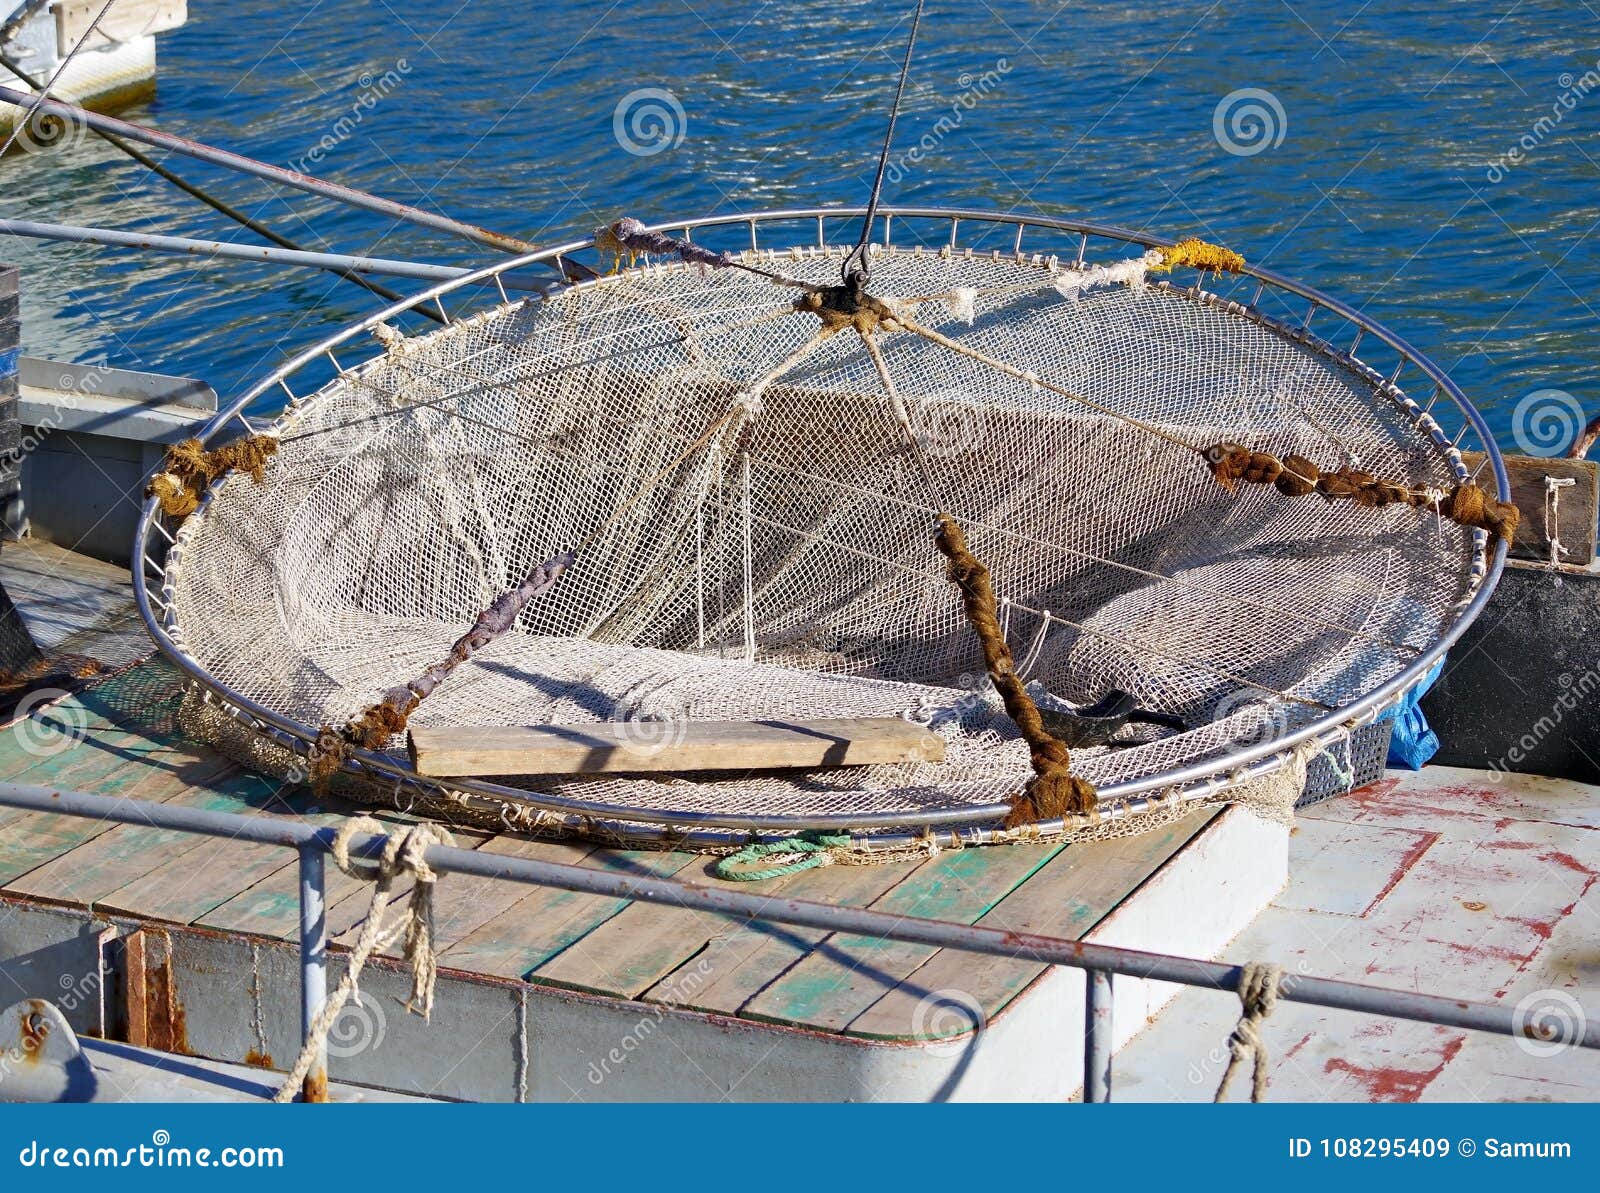 https://thumbs.dreamstime.com/z/detail-trawl-fishing-nets-trawl-fishing-boat-fisherman-wharf-108295409.jpg